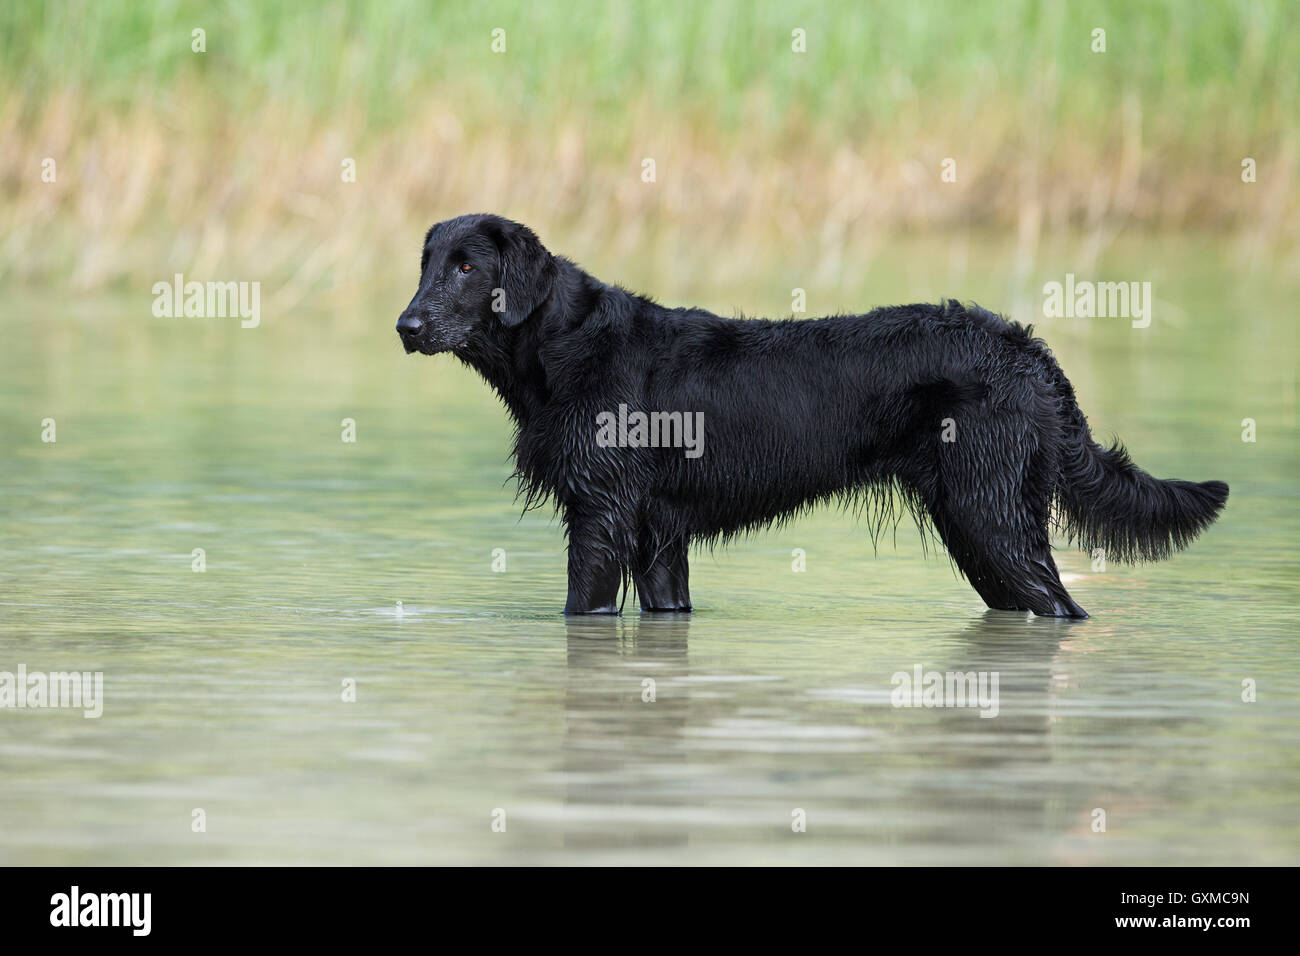 Retriever à Poil Plat, noir, debout dans l'eau en face de roseaux, Tyrol, Autriche Banque D'Images